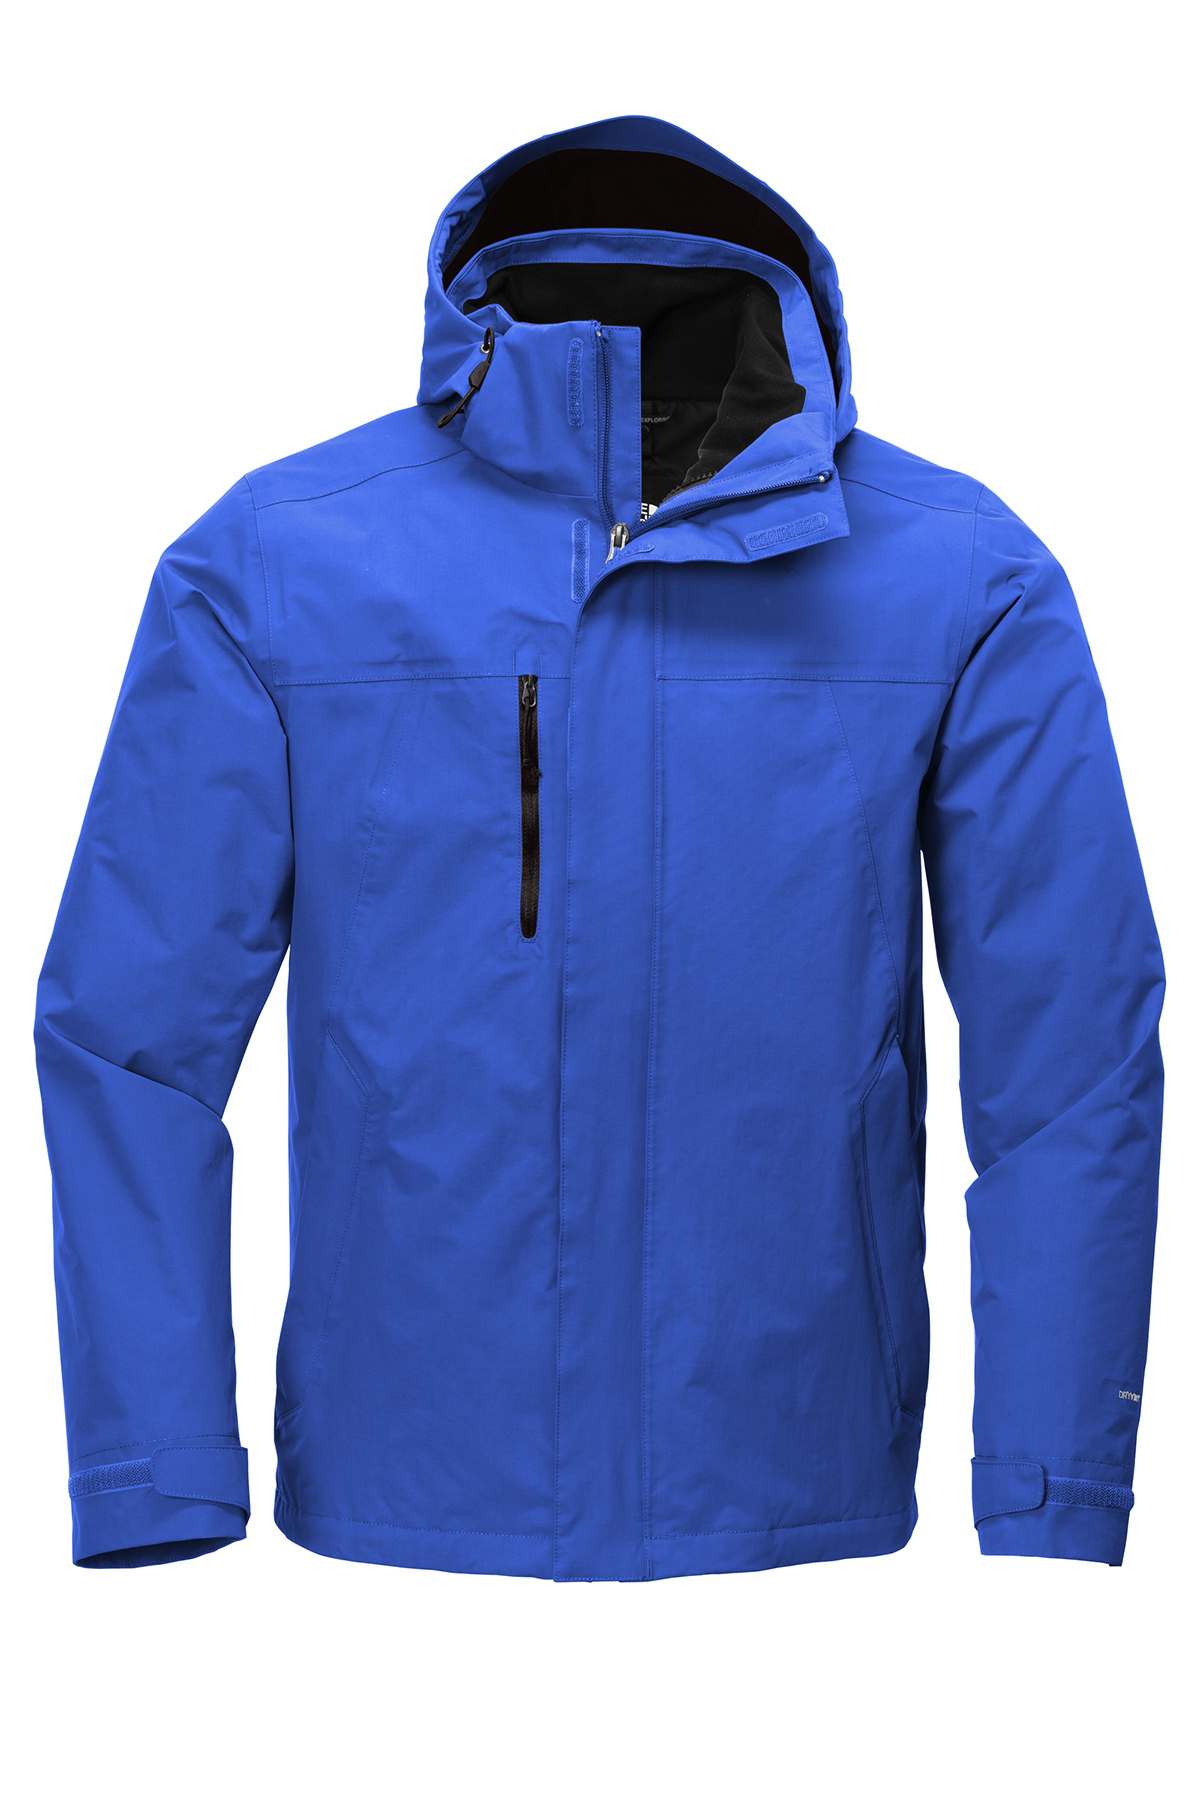 Vochtig heel veel Aantrekkingskracht The North Face Traverse Triclimate 3-in-1 Jacket | Product | SanMar